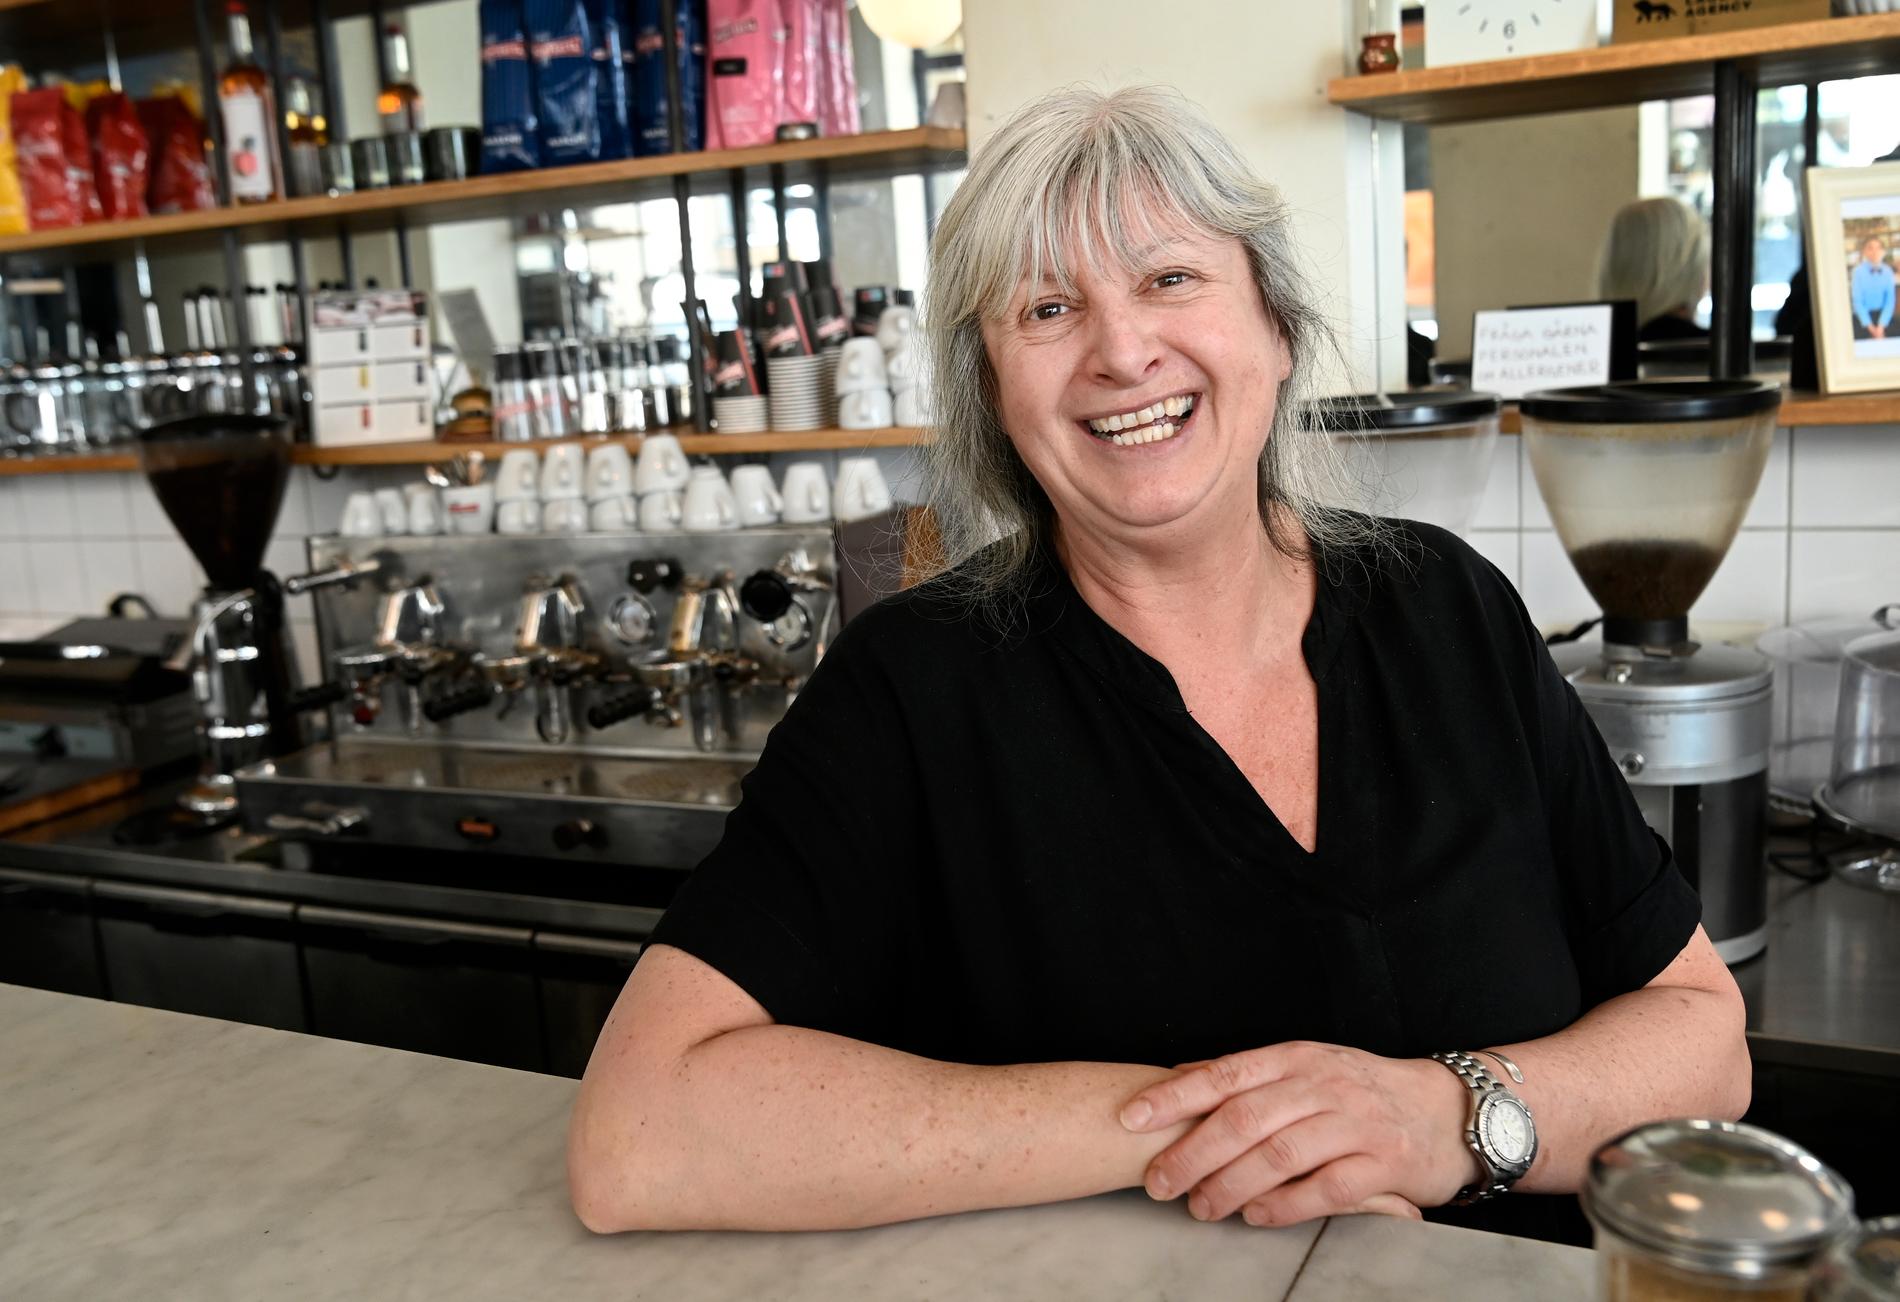 Marita Johansson, 58, ägare till kaféet Kaffe: ”De är ett annorlunda klientel än vad det var för 25 år sedan när jag flyttade hit. Men jag tycker inte det är dåligt, jag tycker det är mysigt att vi blandas upp allihop”.